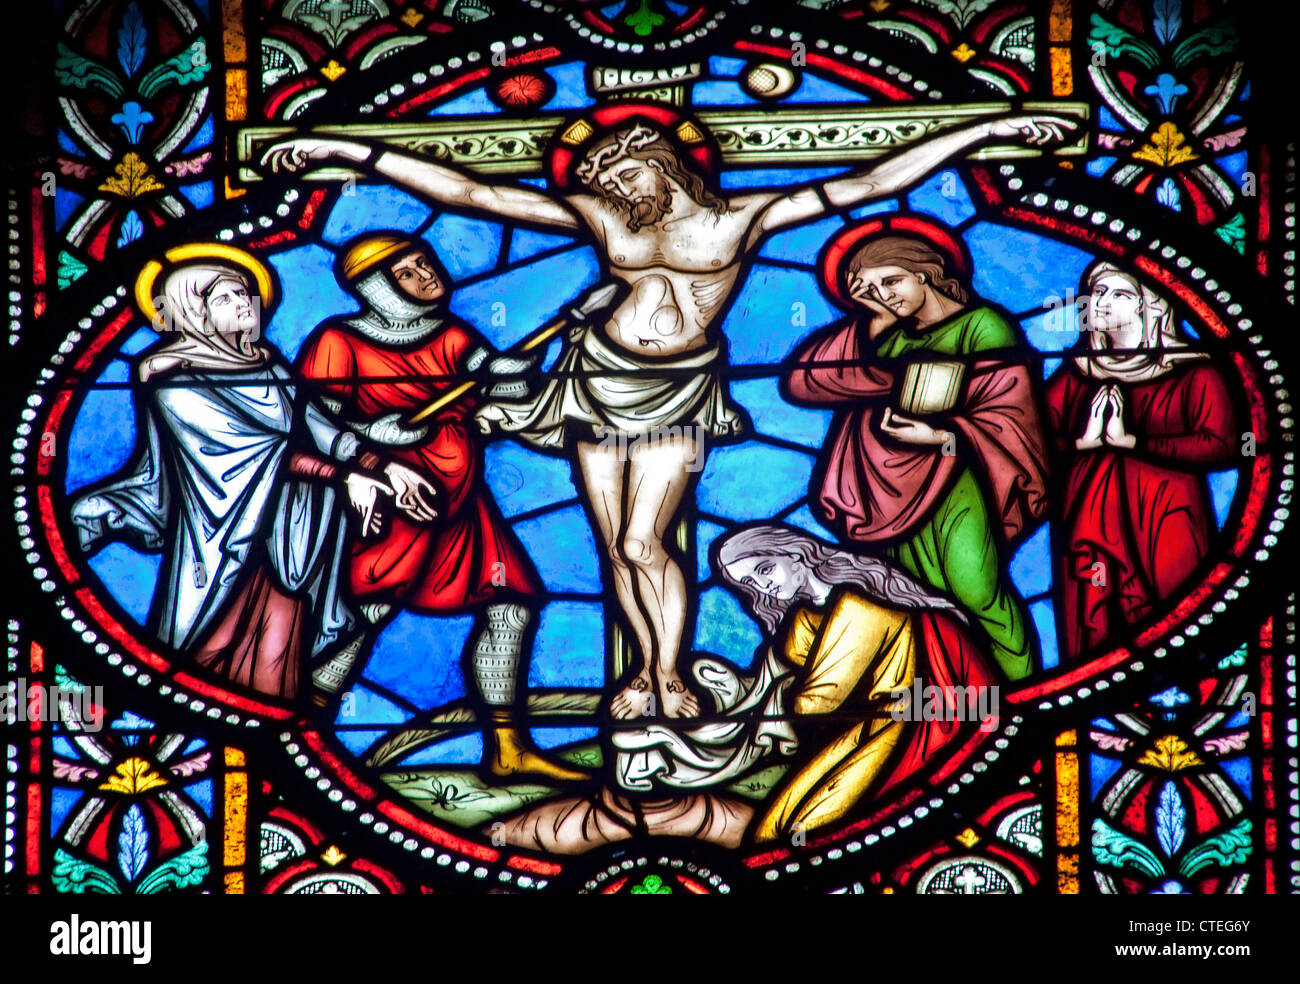 Bruxelles - 22 giugno: la crocifissione dal vetro di finestra in st. Michael s cattedrale gotica il 22 giugno 2012 a Bruxelles. Foto Stock